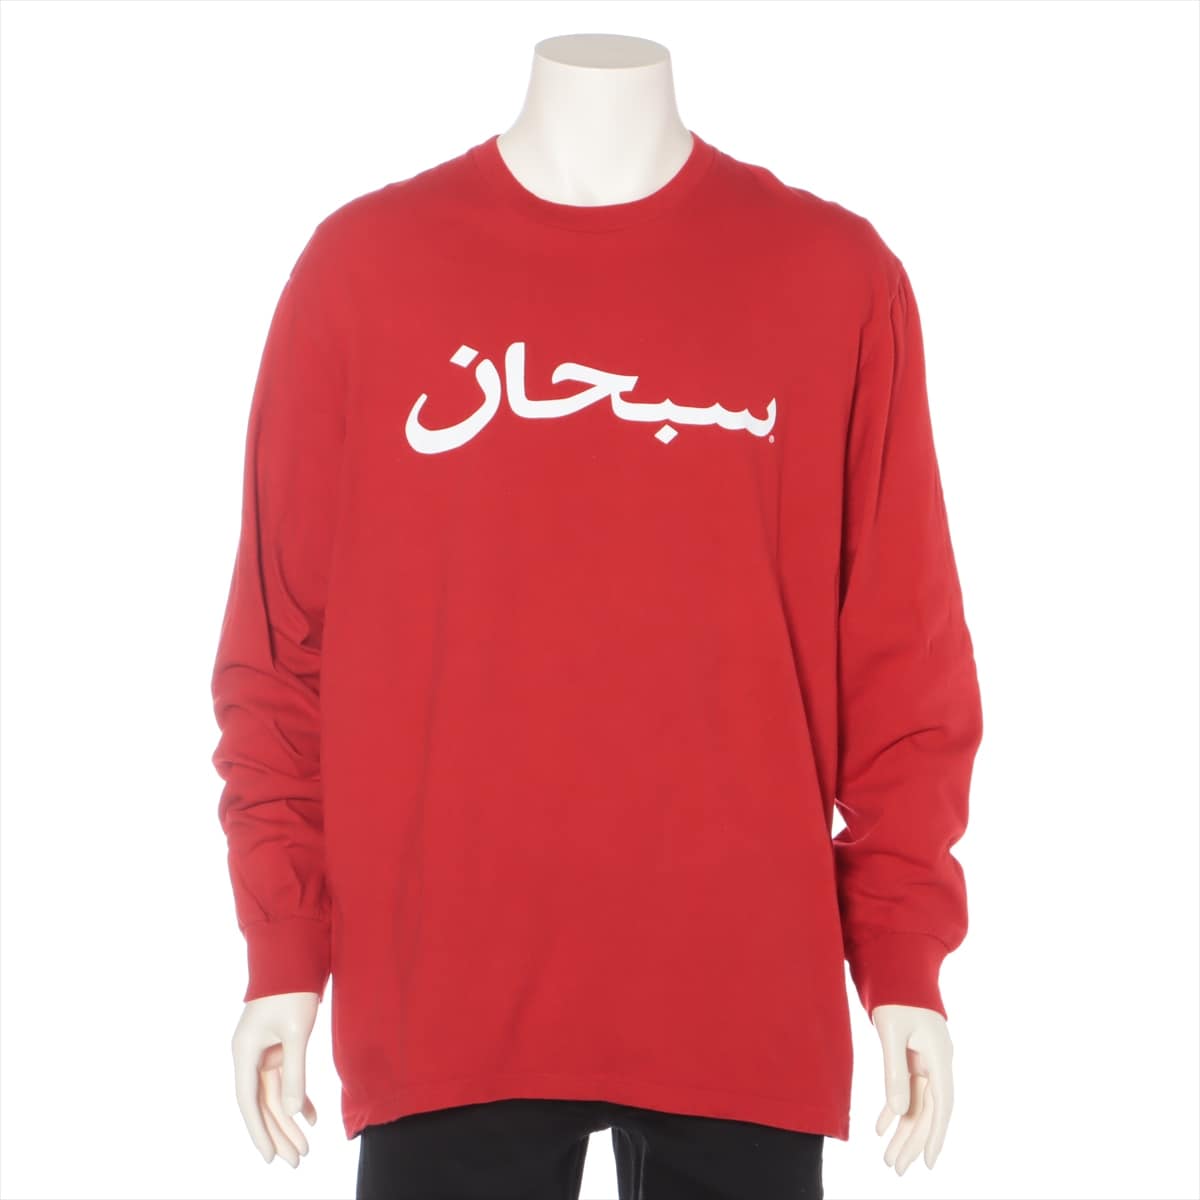 Supreme 17AW Cotton Long T shirts L Men's Red  Arabic Logo